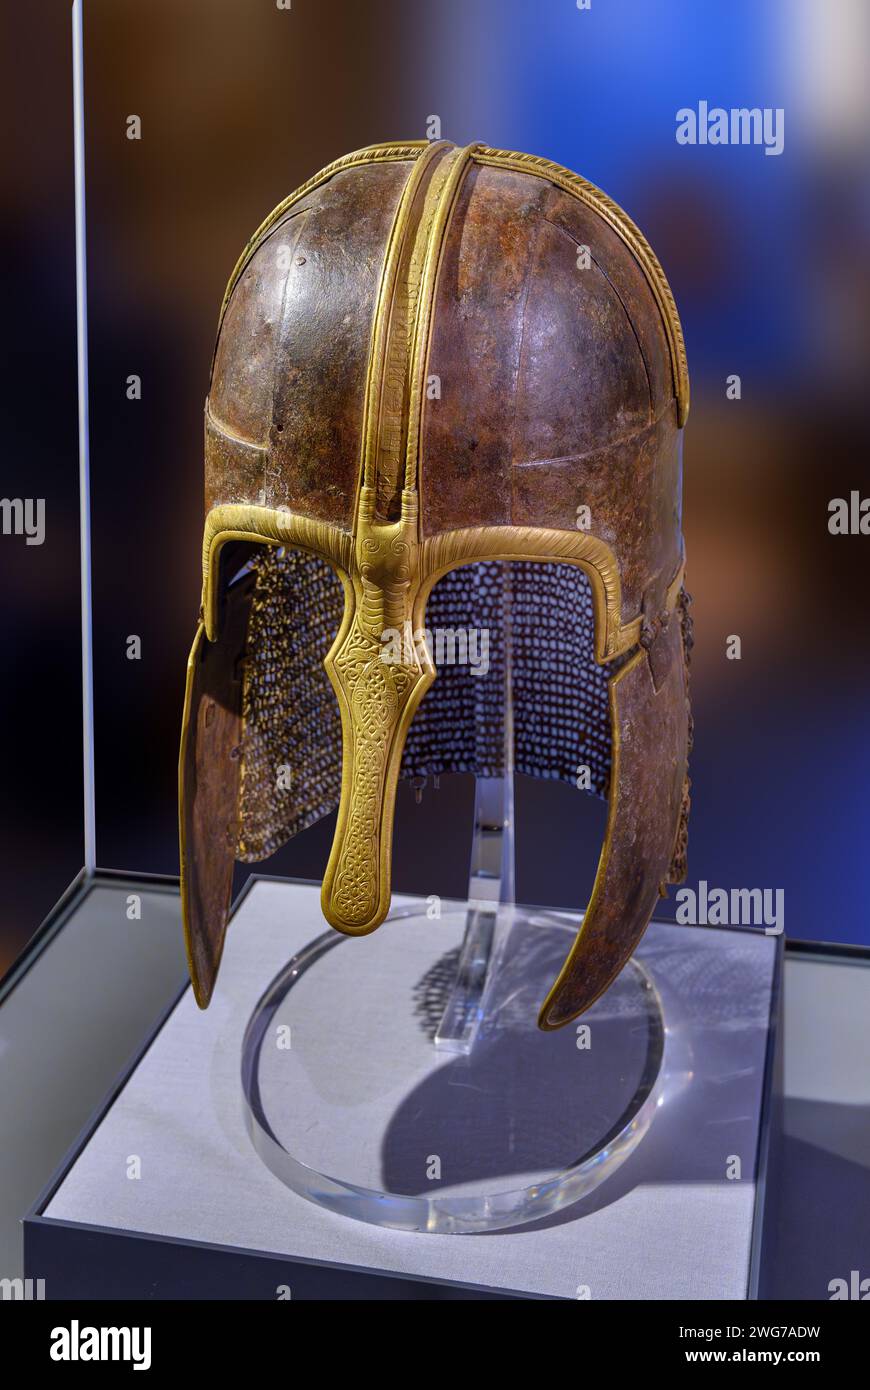 Der York Helmet, Yorkshire Museum, York, North Yorkshire, England. Dieser anglische Helm aus Eisen und Messing stammt aus der Zeit um 750-775 n. Chr Stockfoto